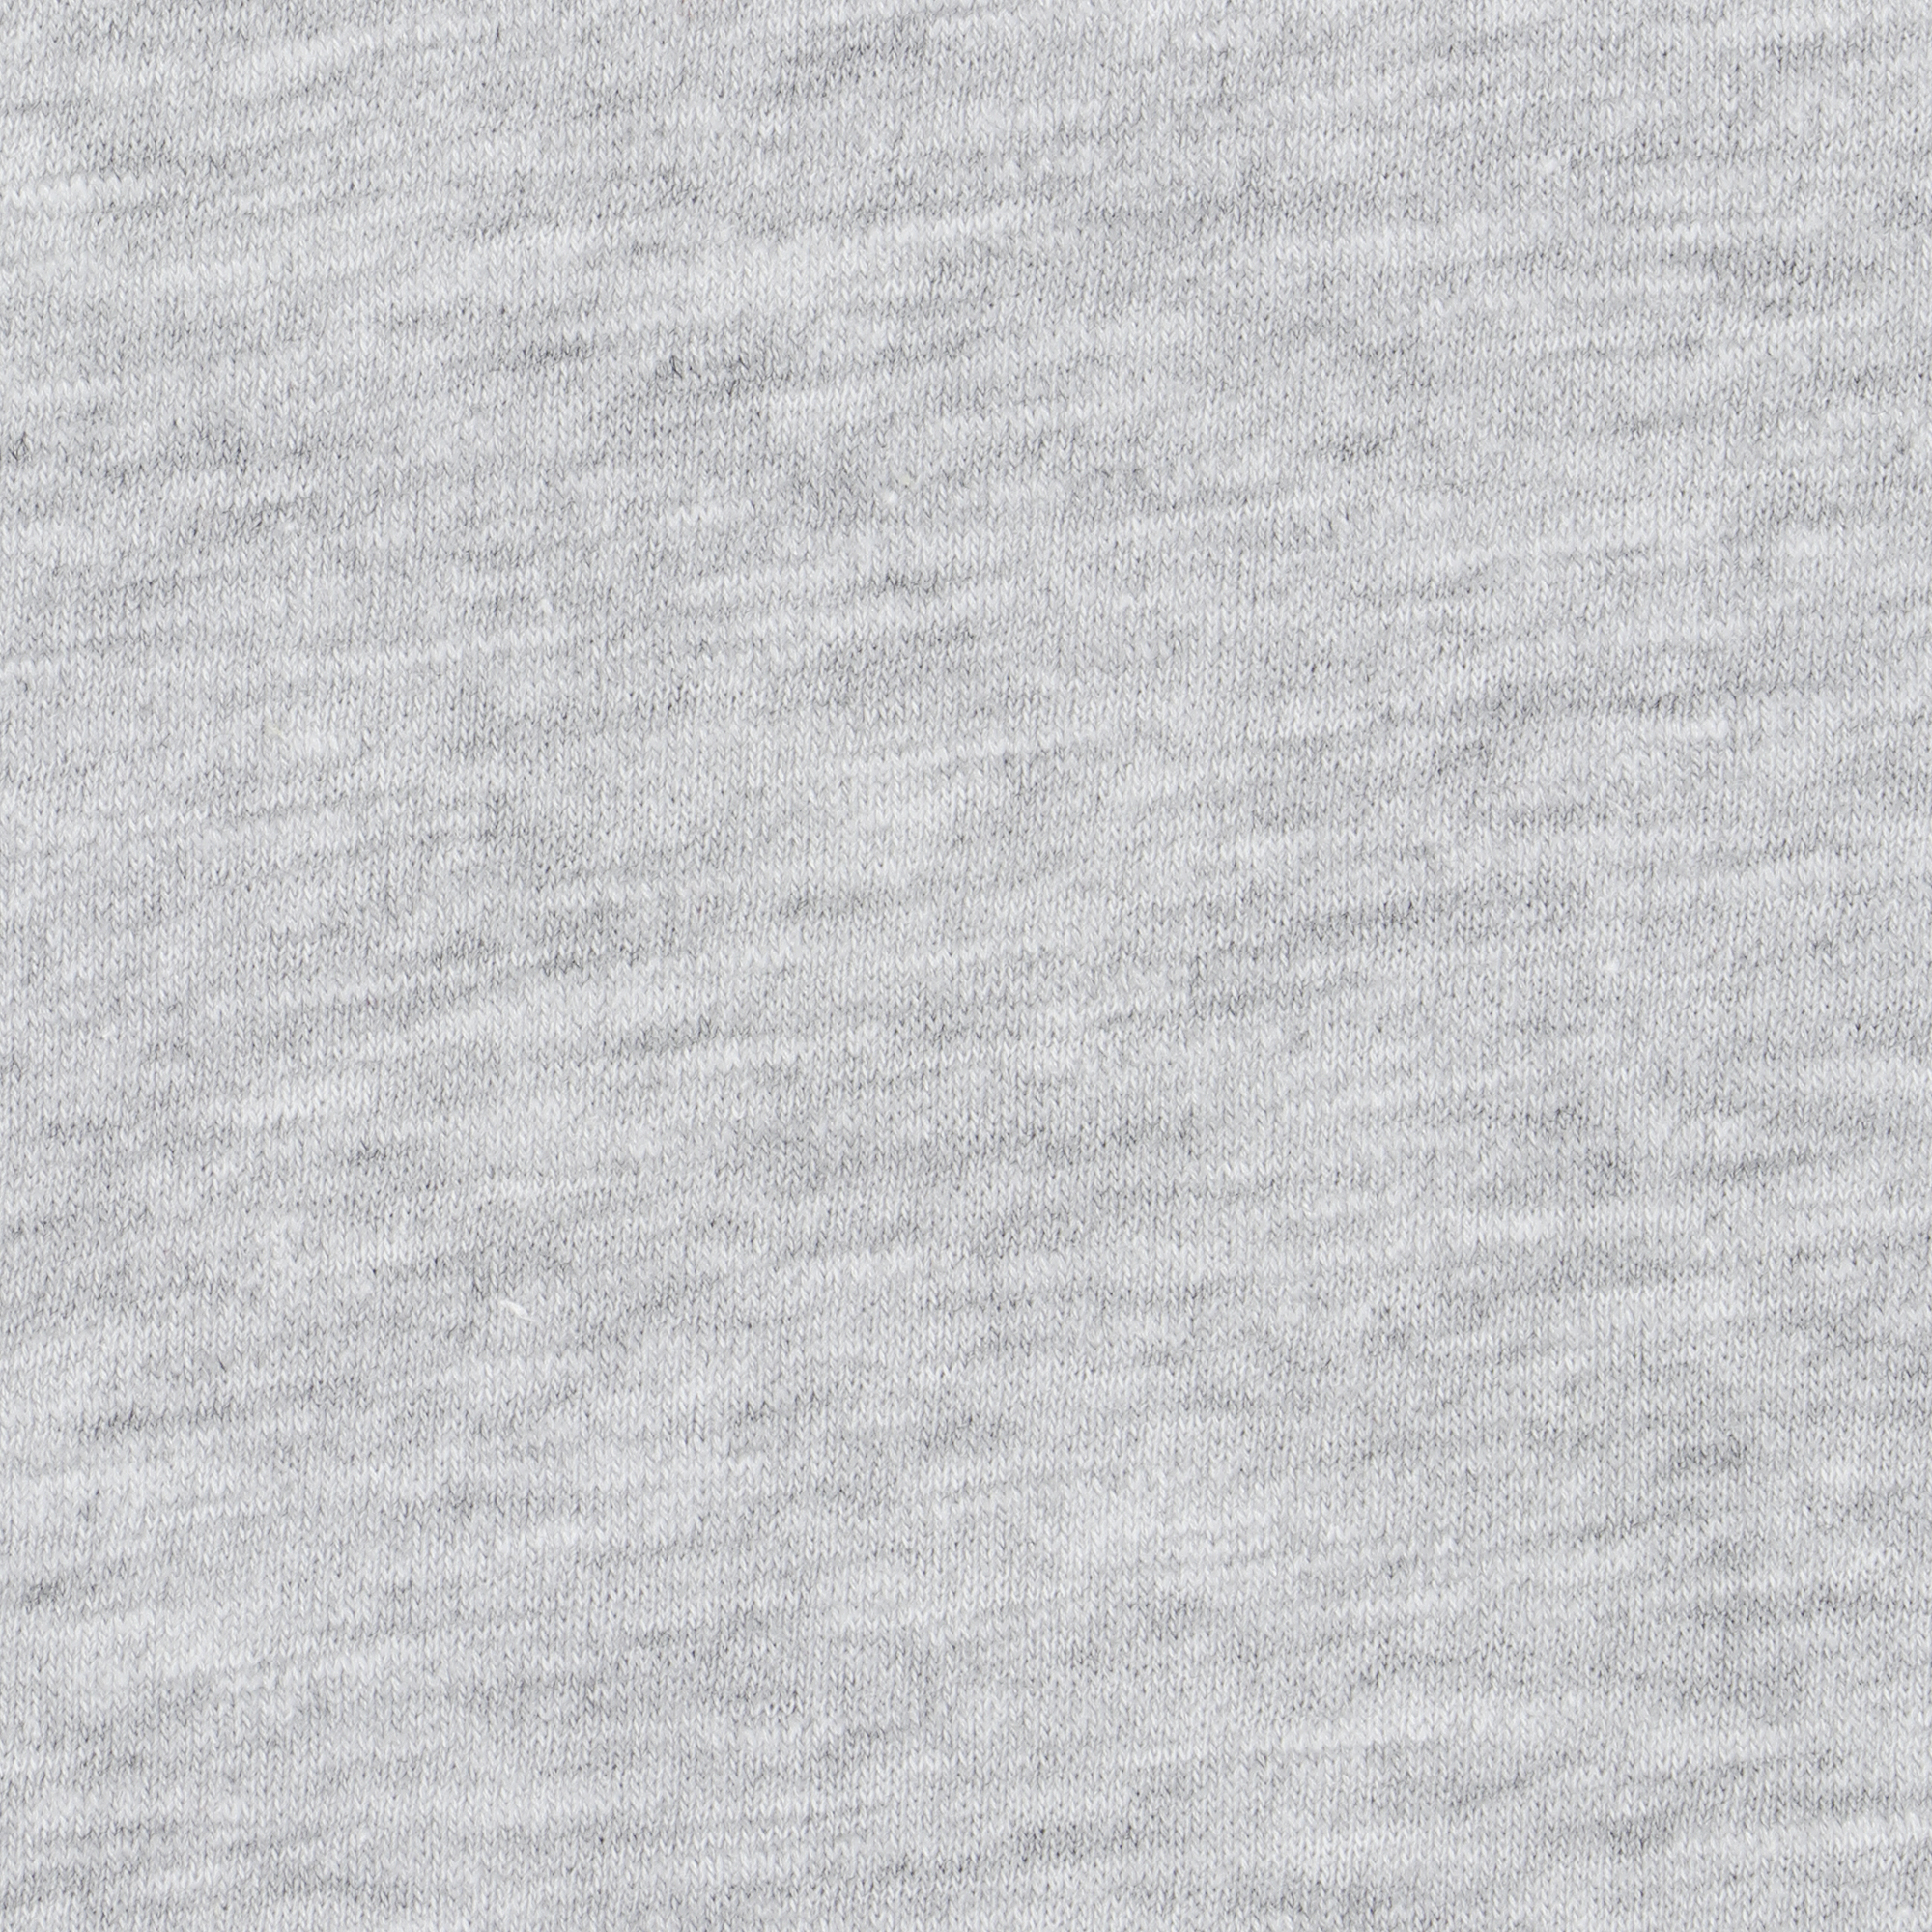 Футболка мужская Pantelemone MF-907 серый меланж 46, размер 46 - фото 3